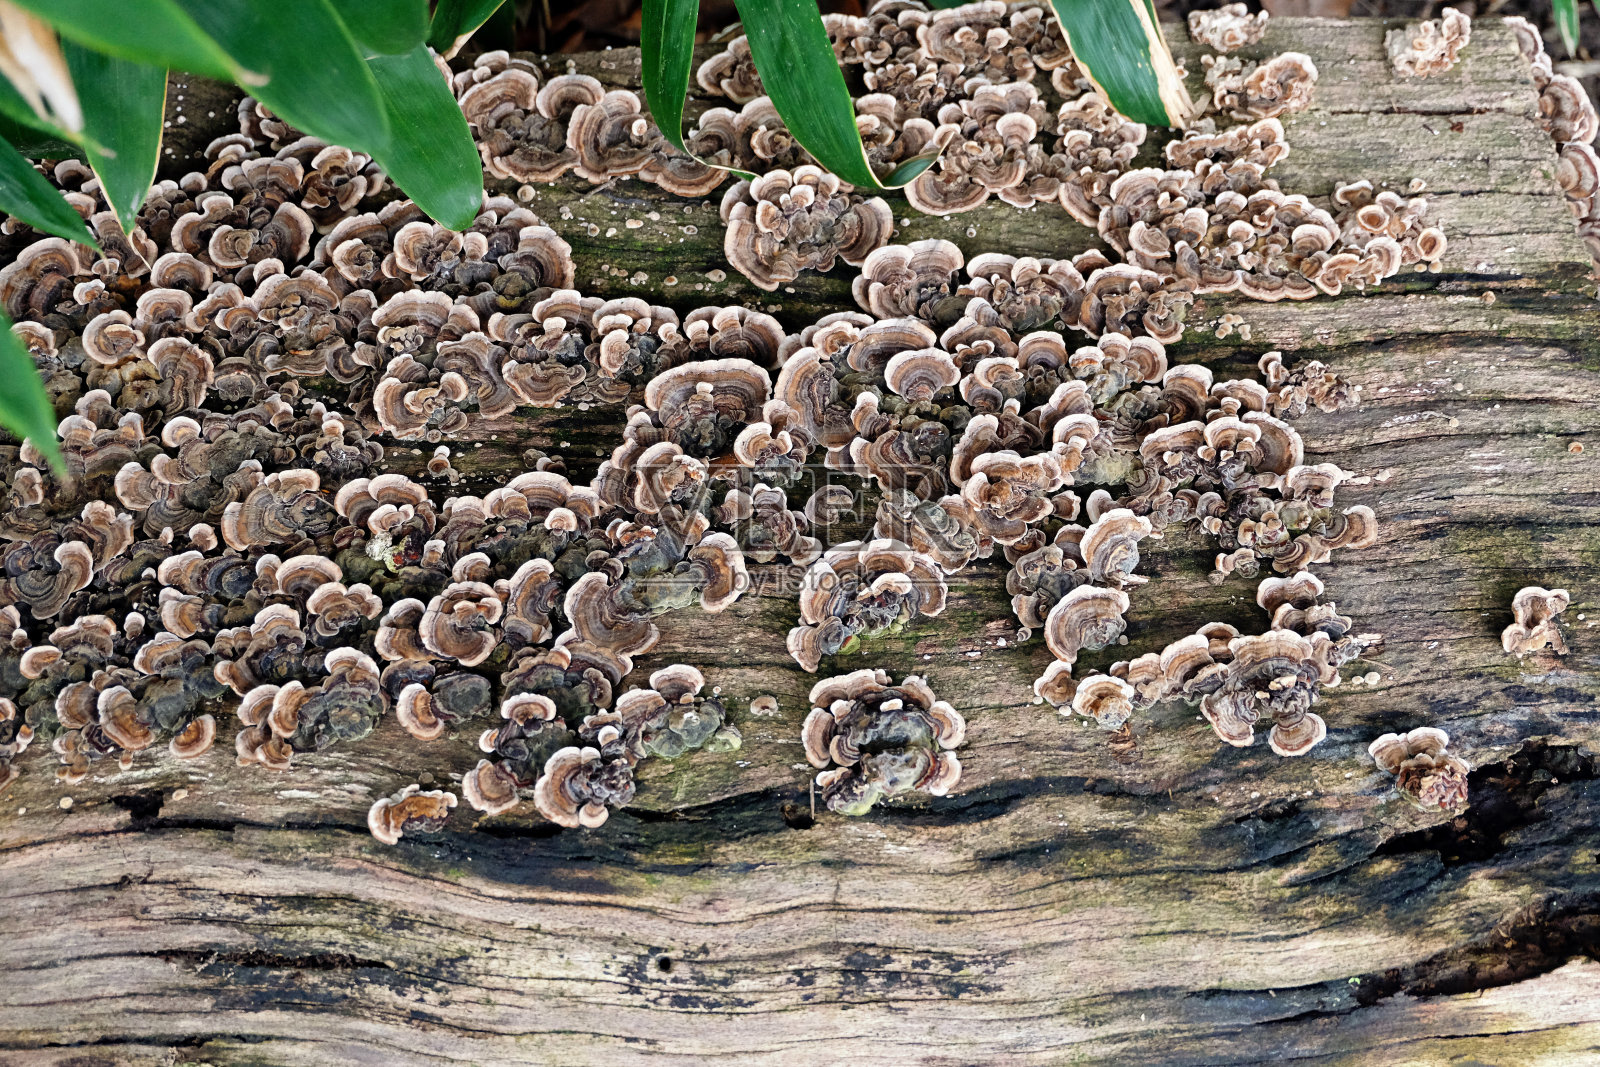 一个彩色蘑菇菌落生长在平坦的木质表面(trametes versicolor / turkey tail)照片摄影图片